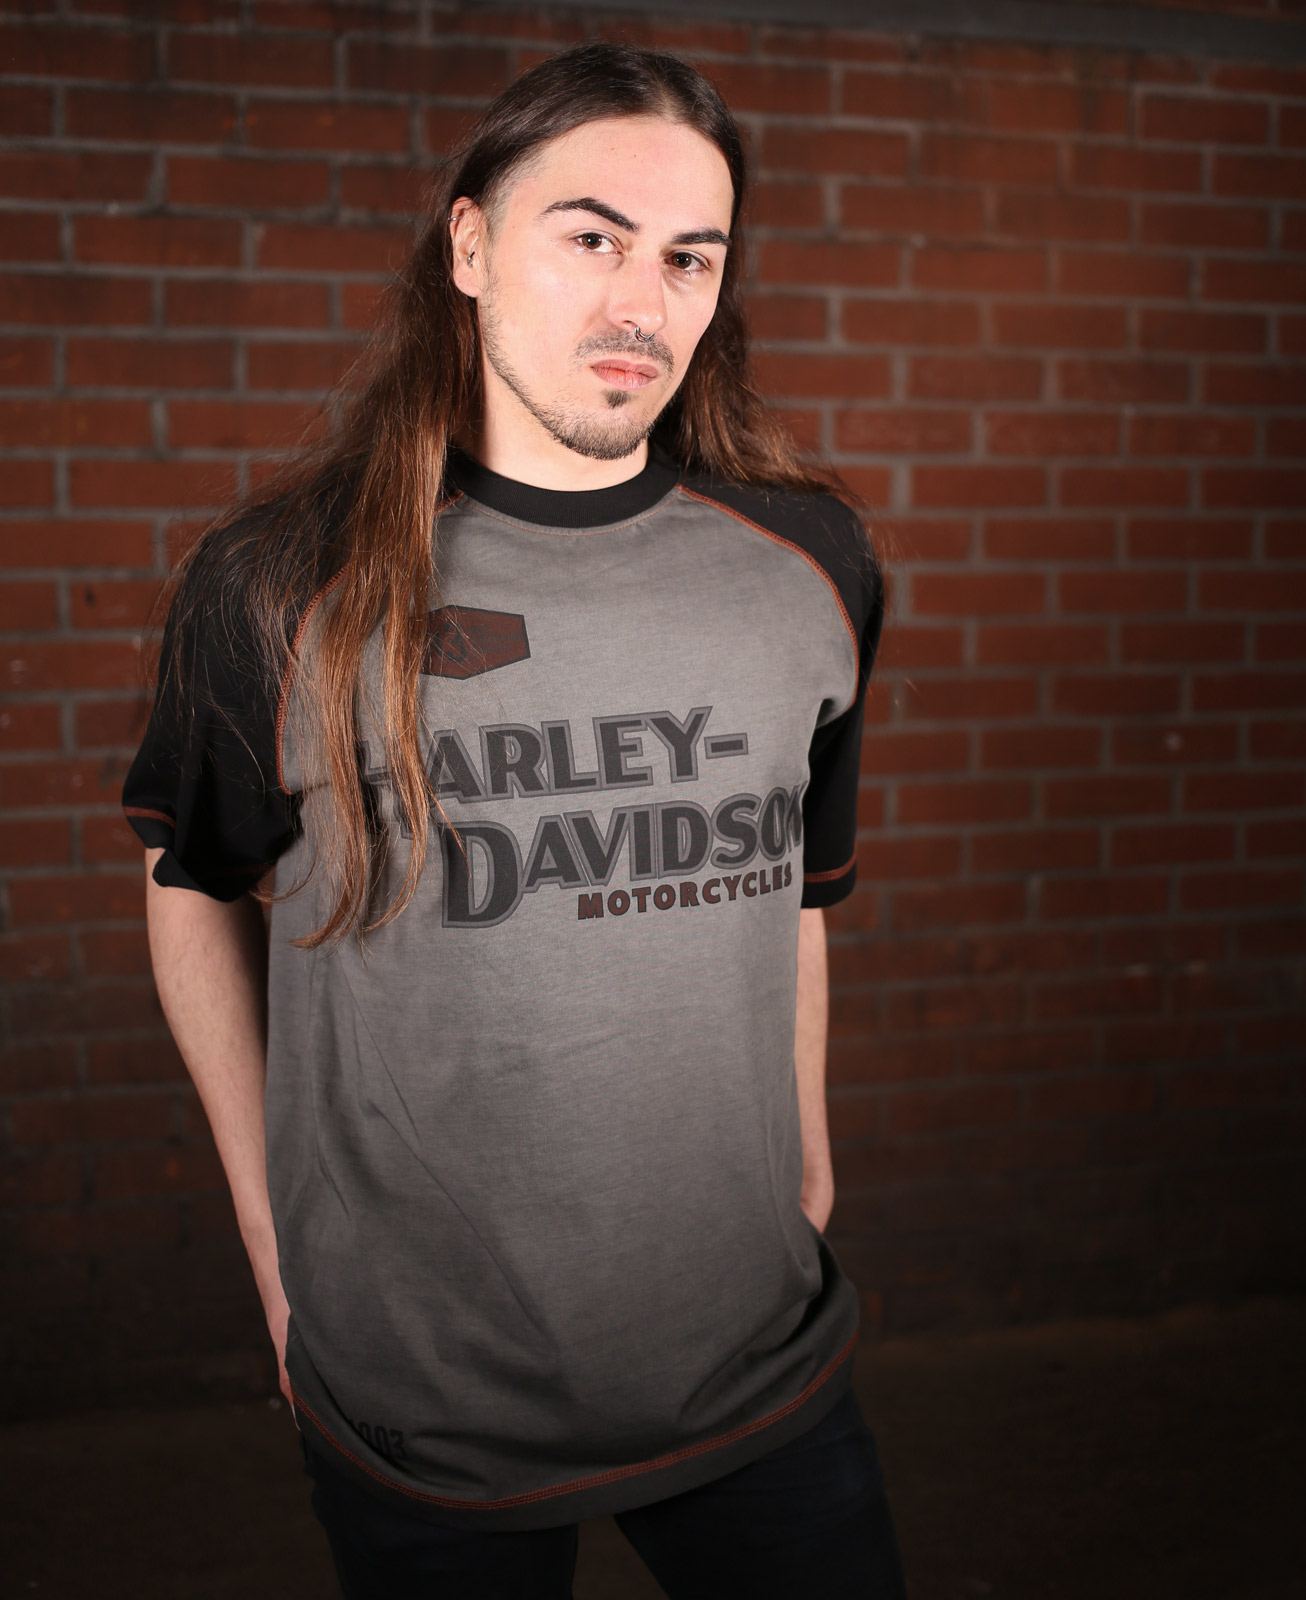 HARLEY-DAVIDSON Official Mens Iron Block Long-Sleeve Shirt Grey